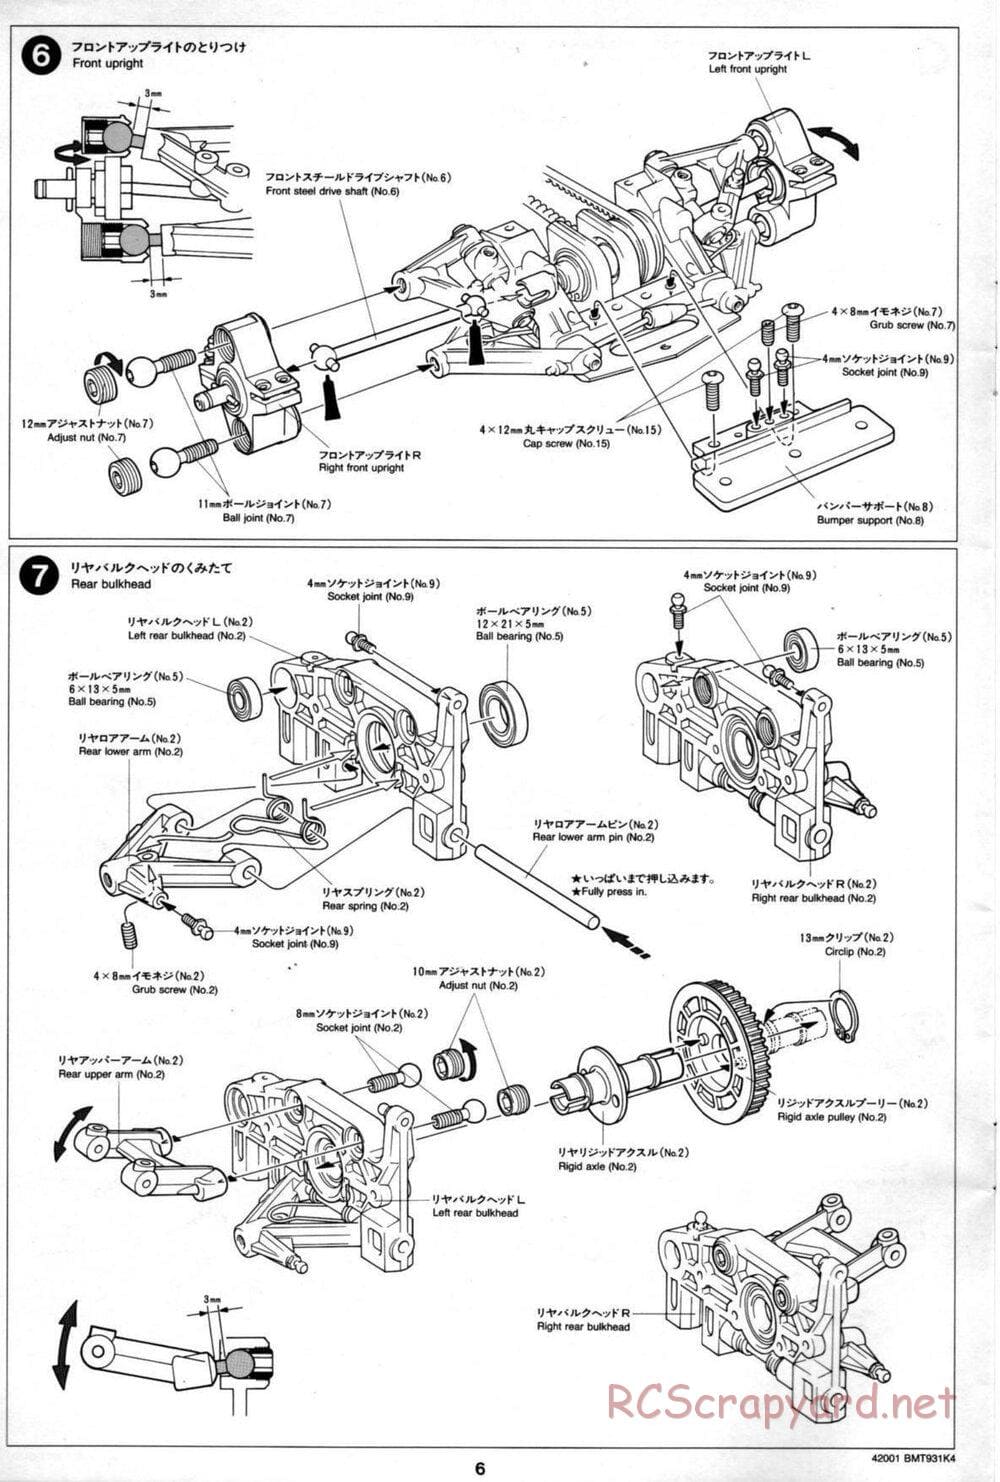 Tamiya - BMT 931 K4 Racing Chassis - Manual - Page 6